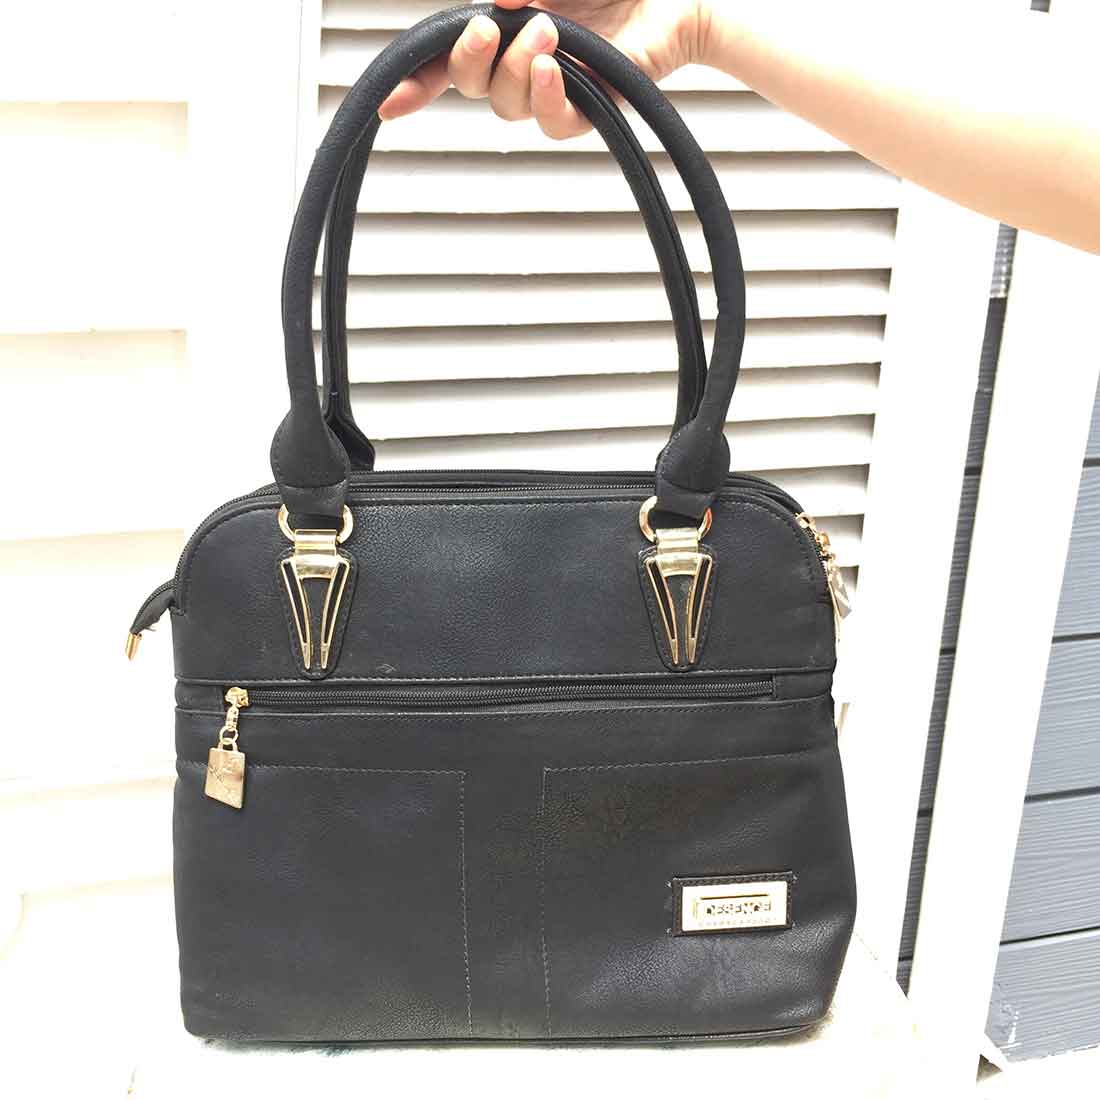 Black Handbags for Women  - Office Bags for Women - ApkaMart